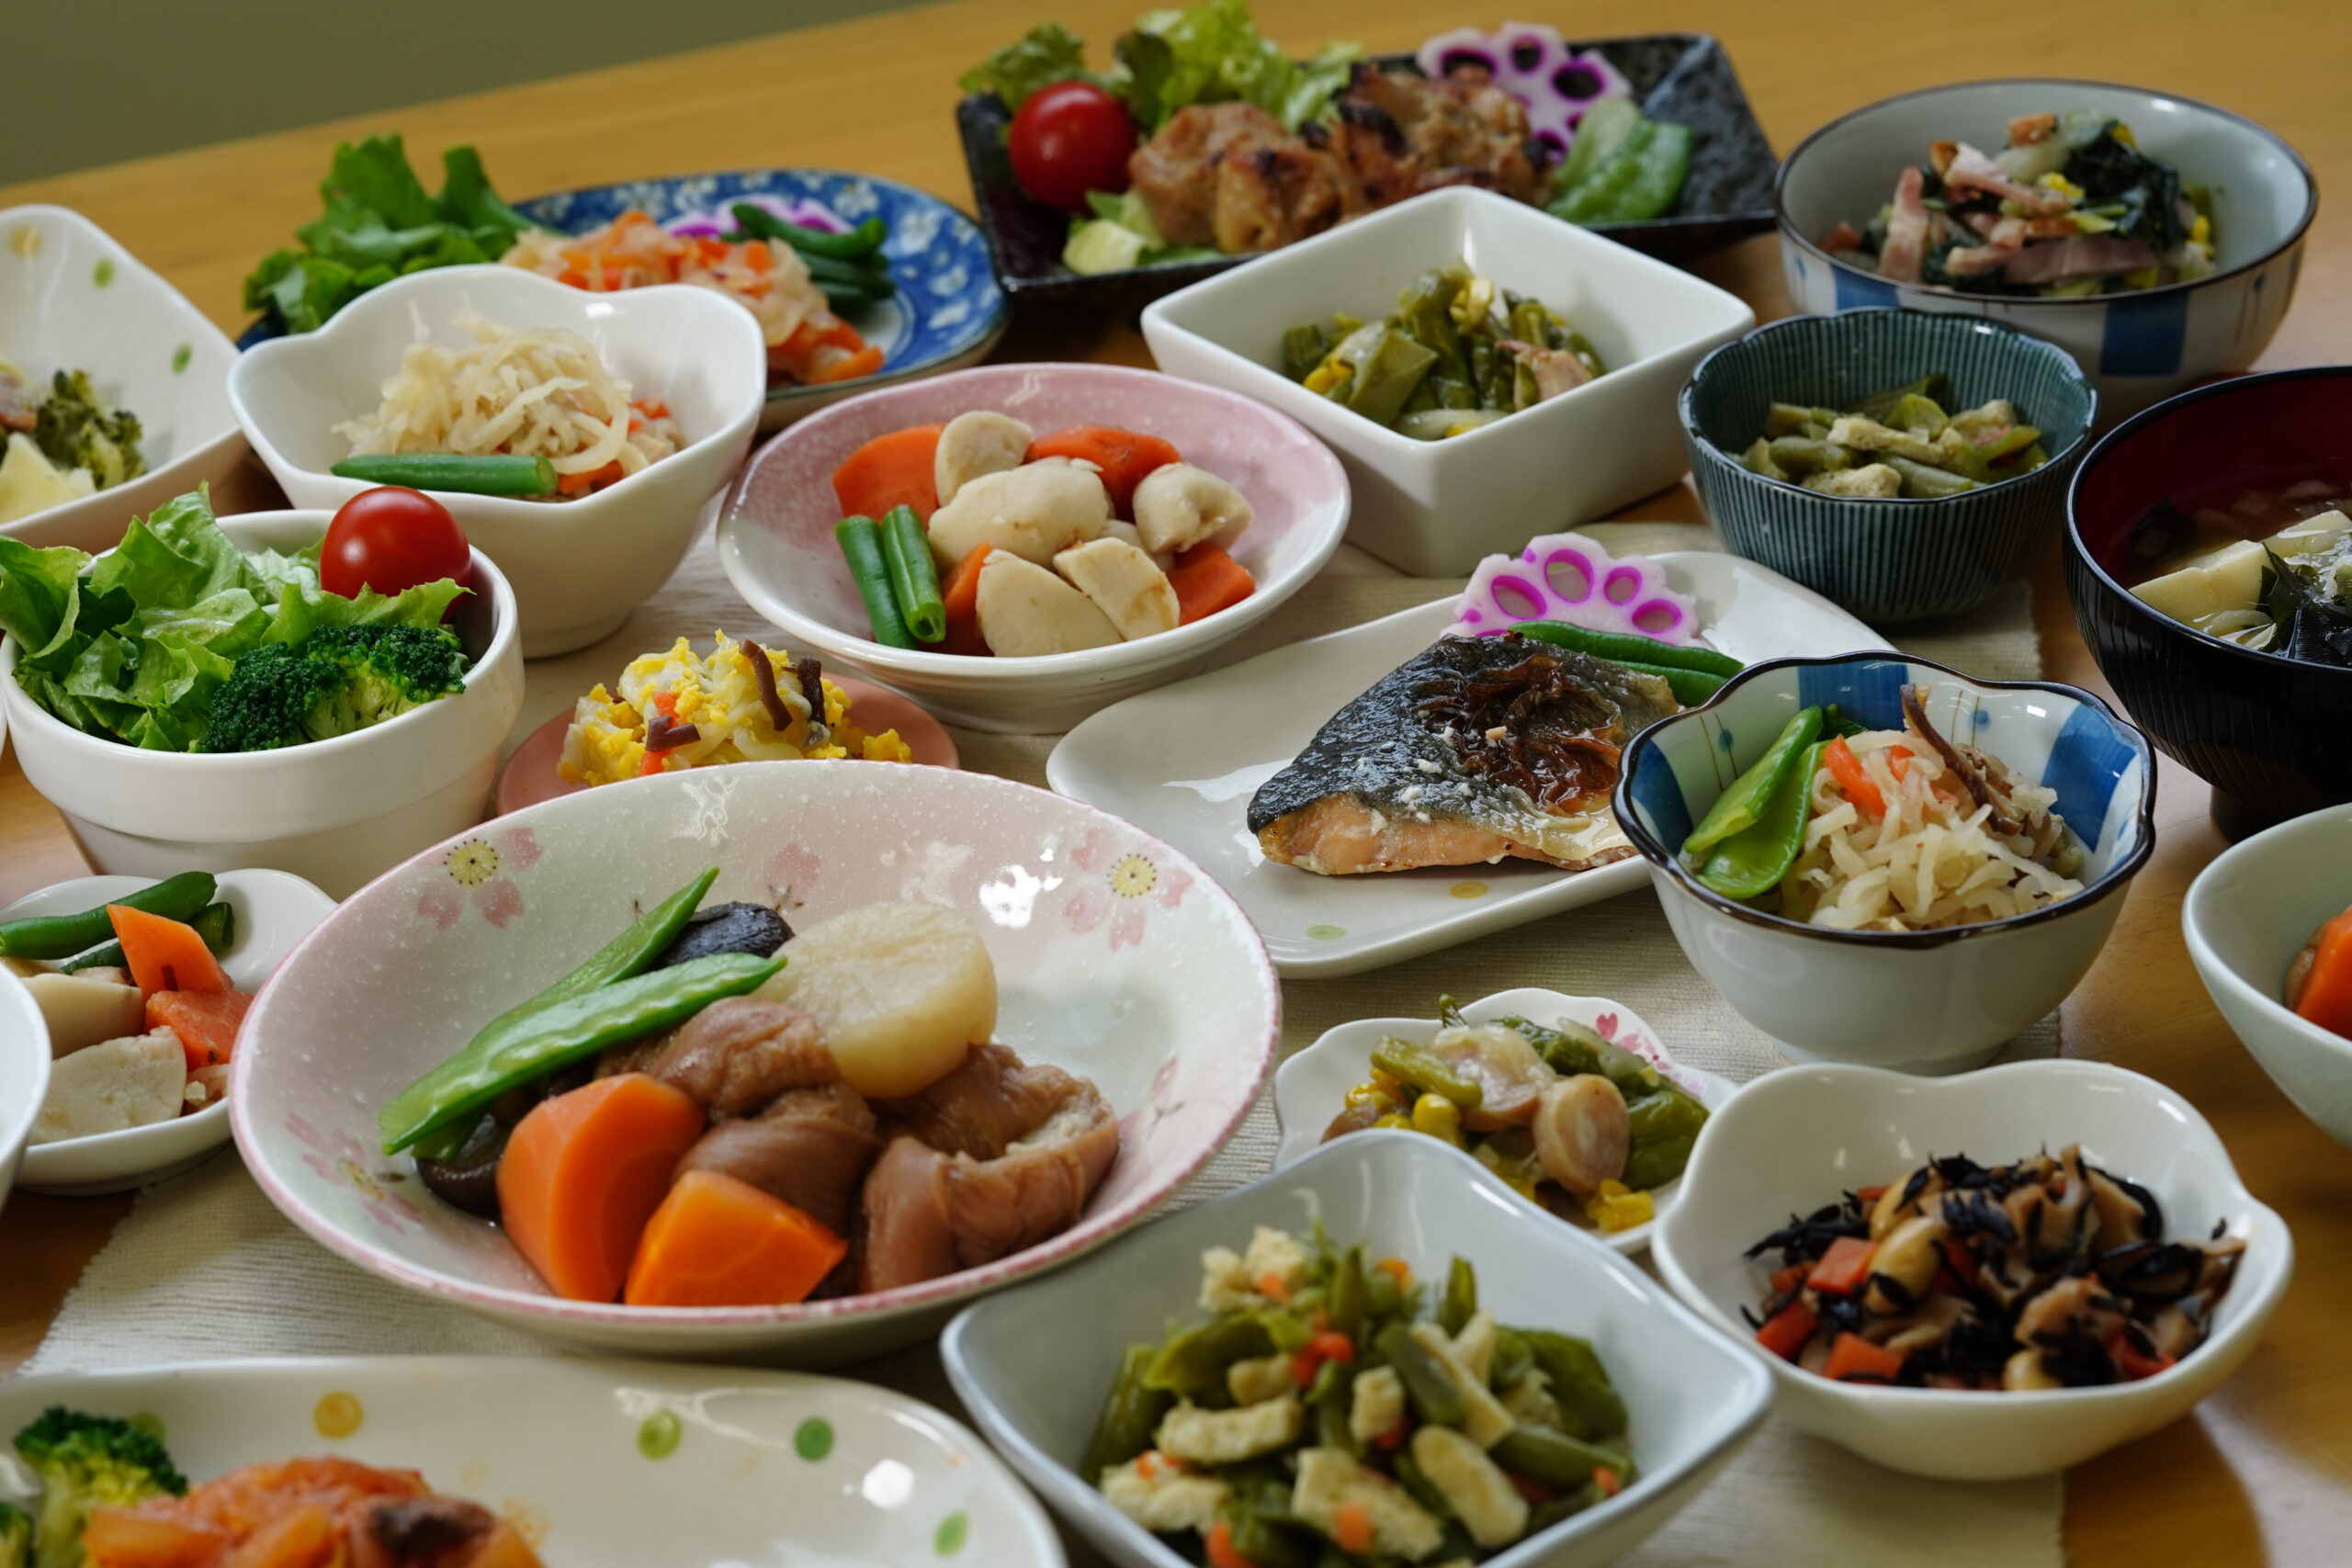 和食の惣菜の盛り付け例。鮭、チキンなど